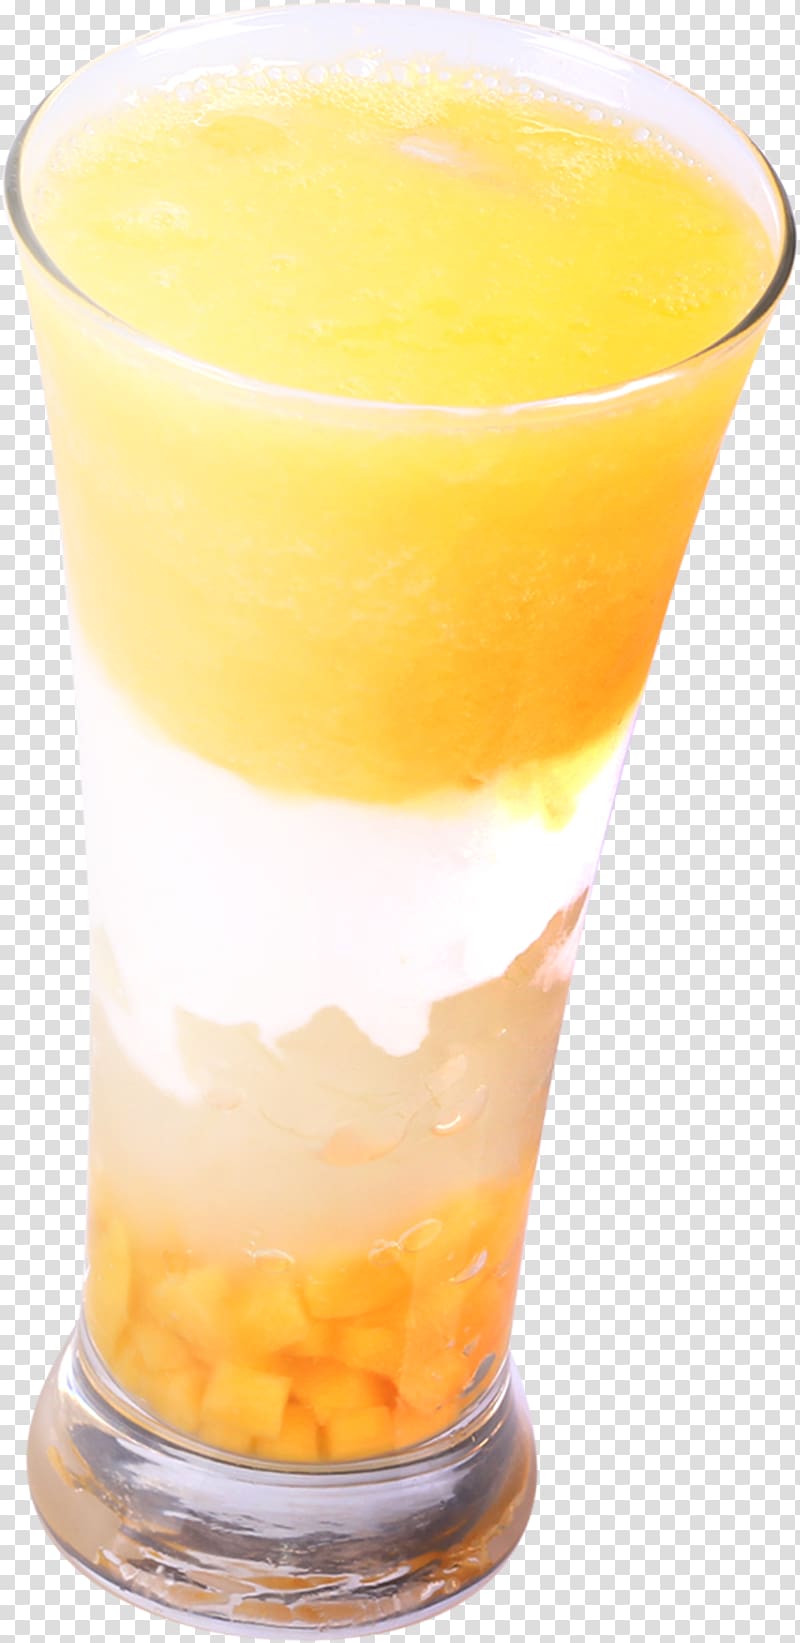 Orange juice Orange drink Tomato juice Fuzzy navel, Freshly squeezed lemon juice transparent background PNG clipart